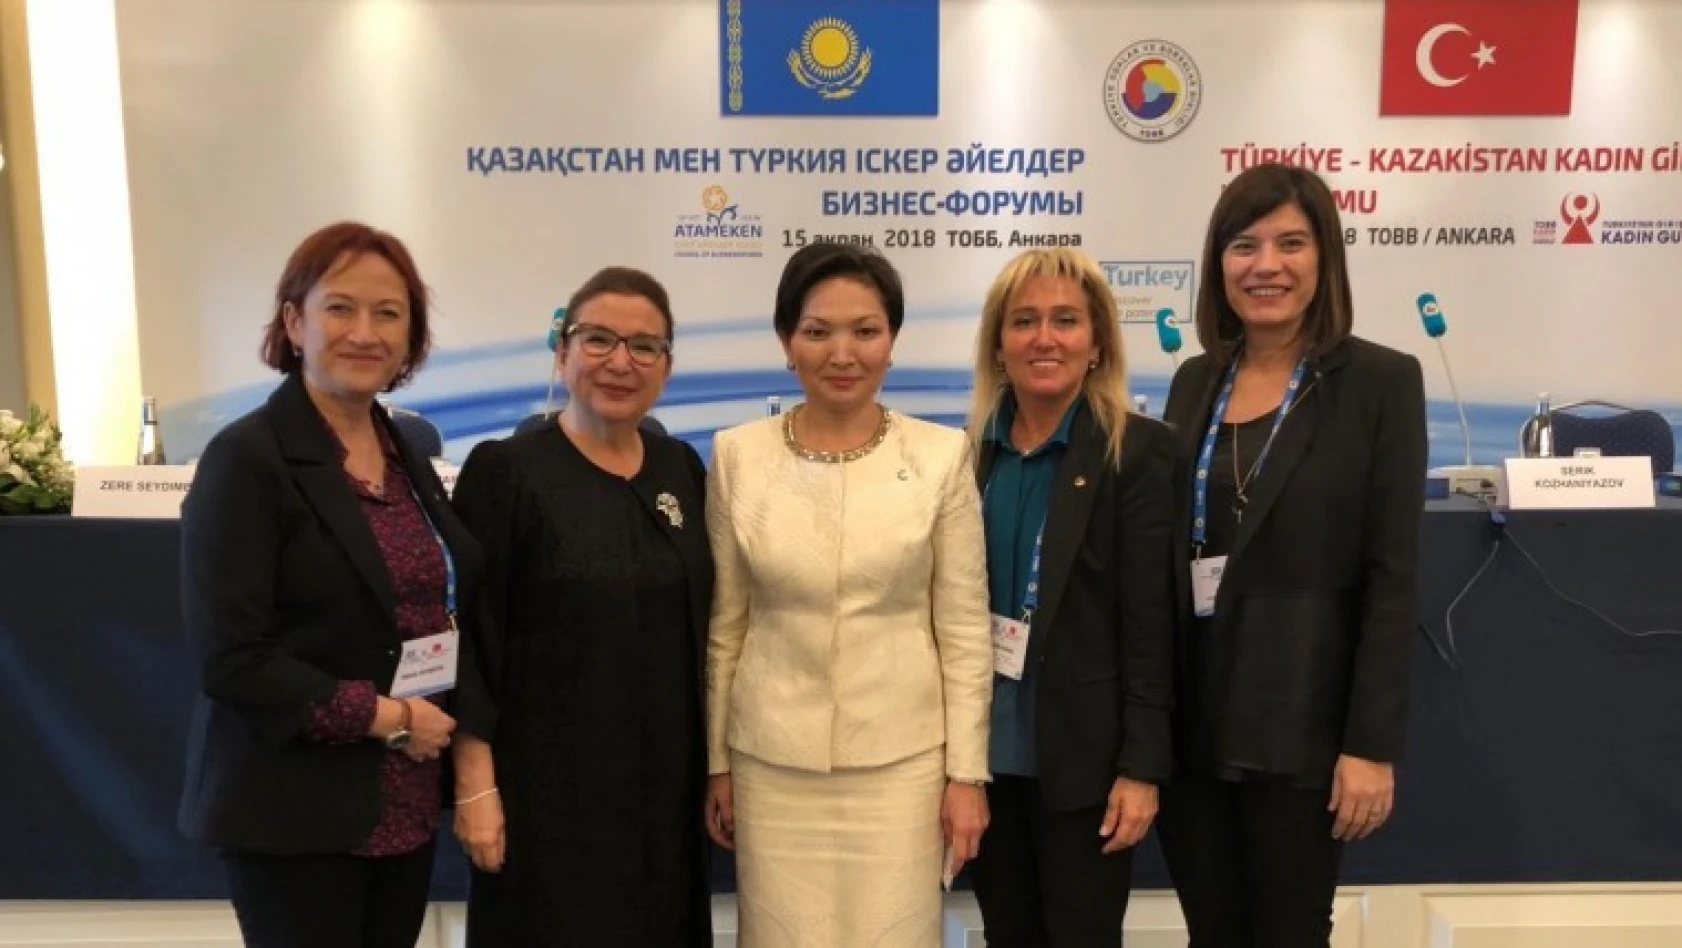 Kadın Girişimciler Türkiye-Kazakistan İş Forumunda